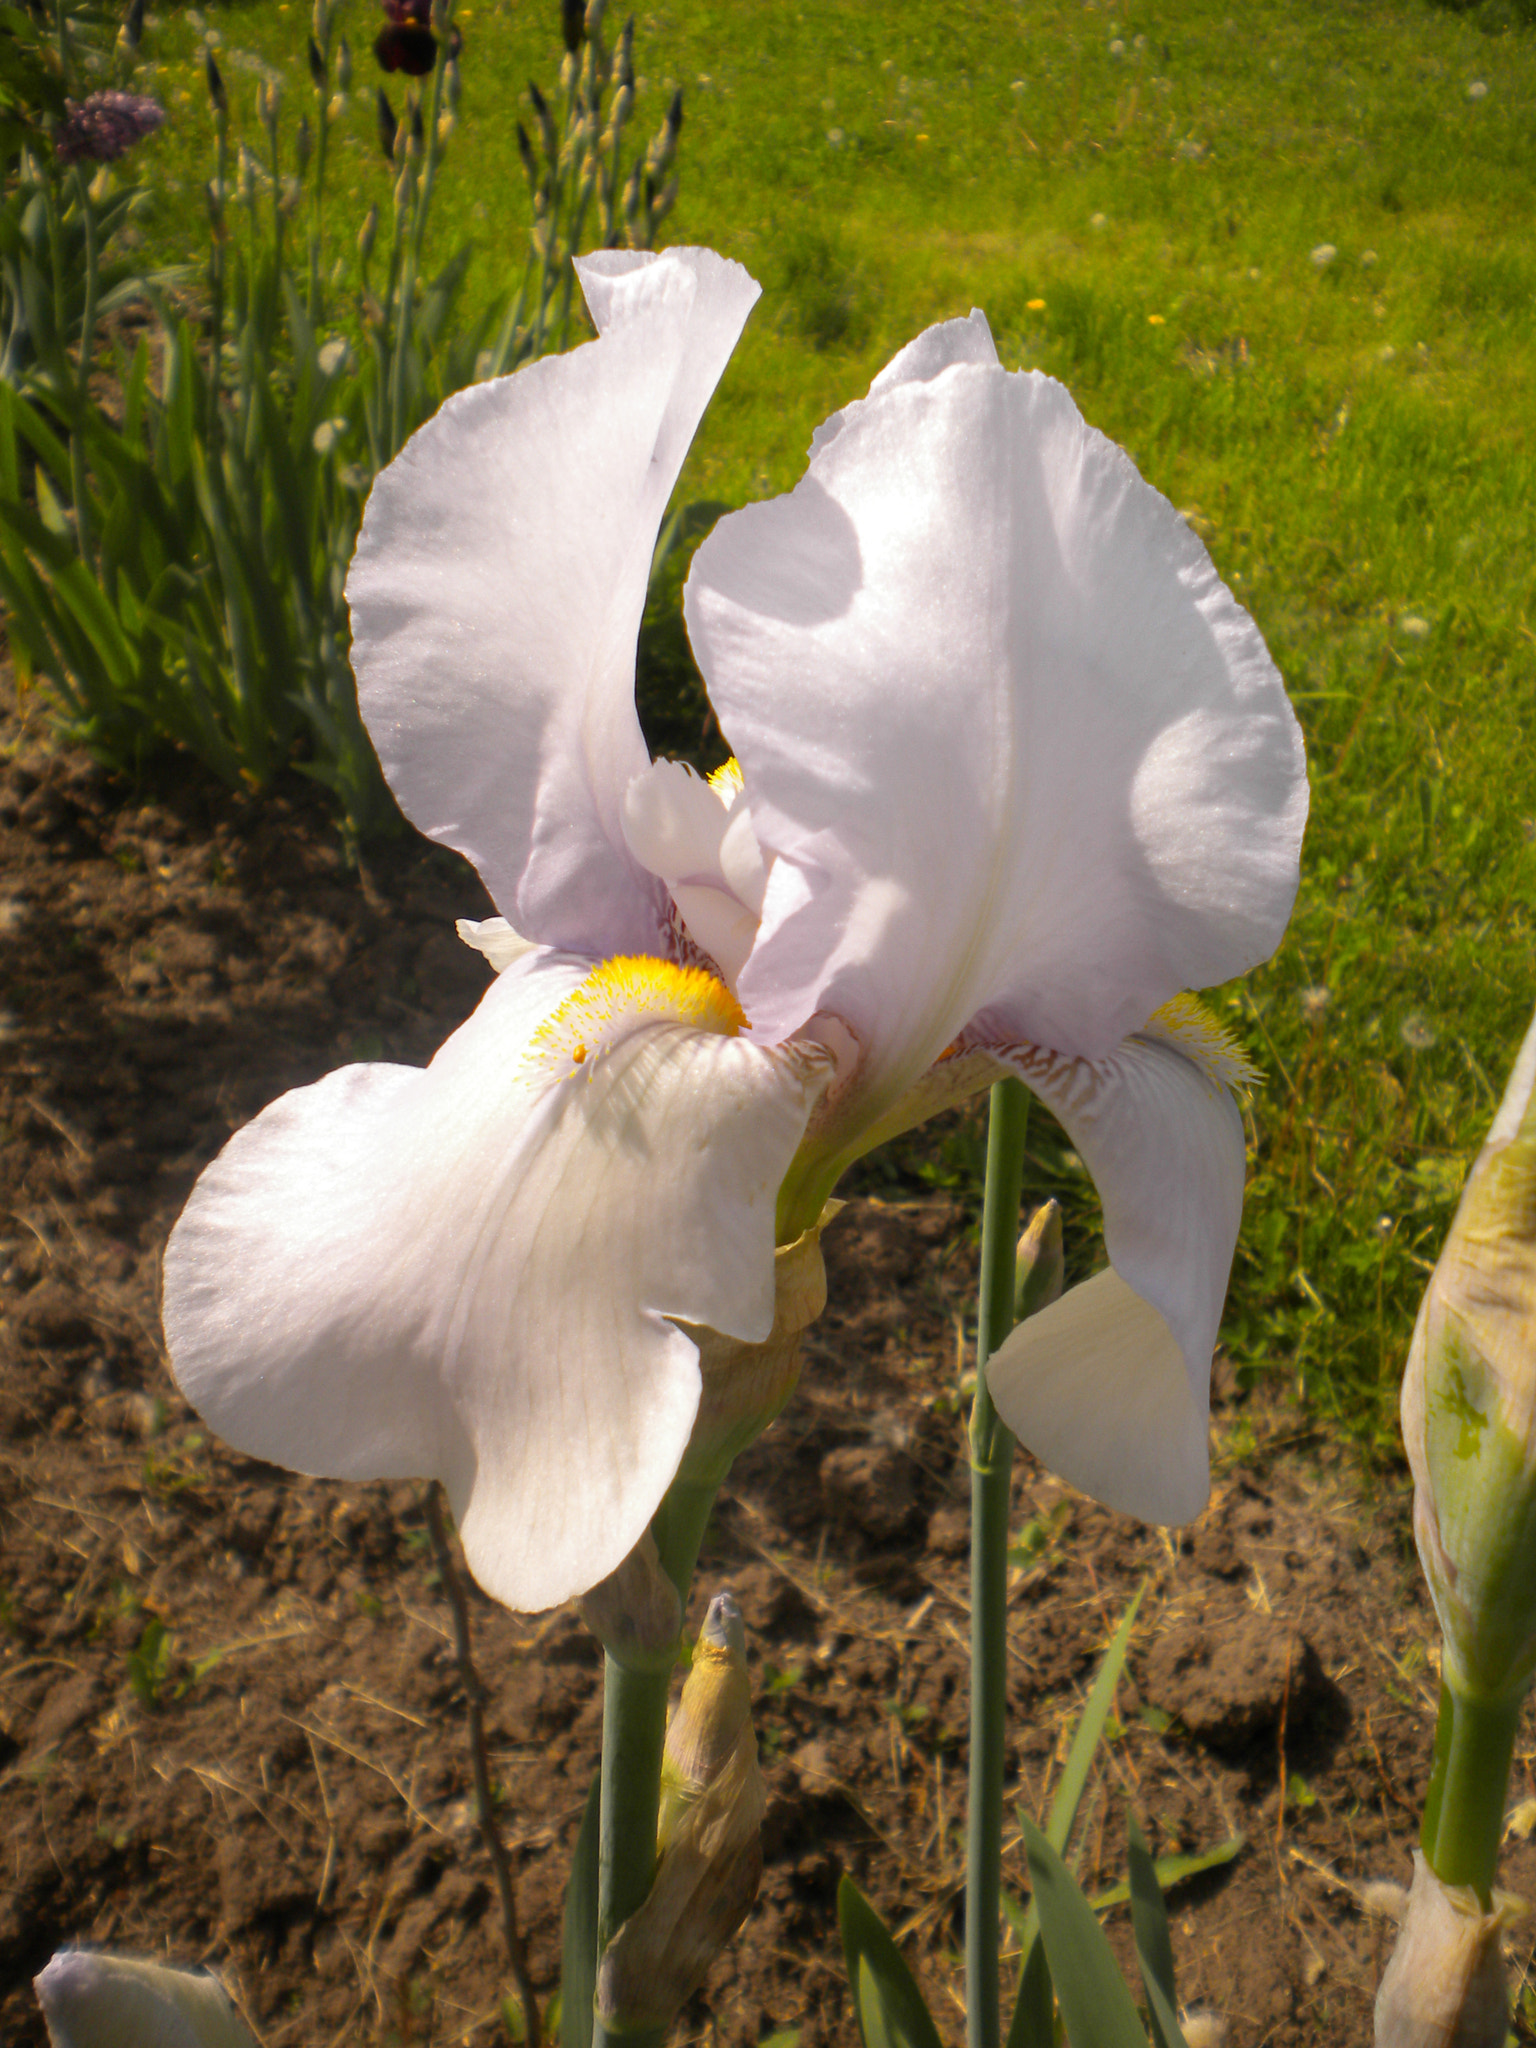 Nikon Coolpix S220 sample photo. White iris fragrant photography